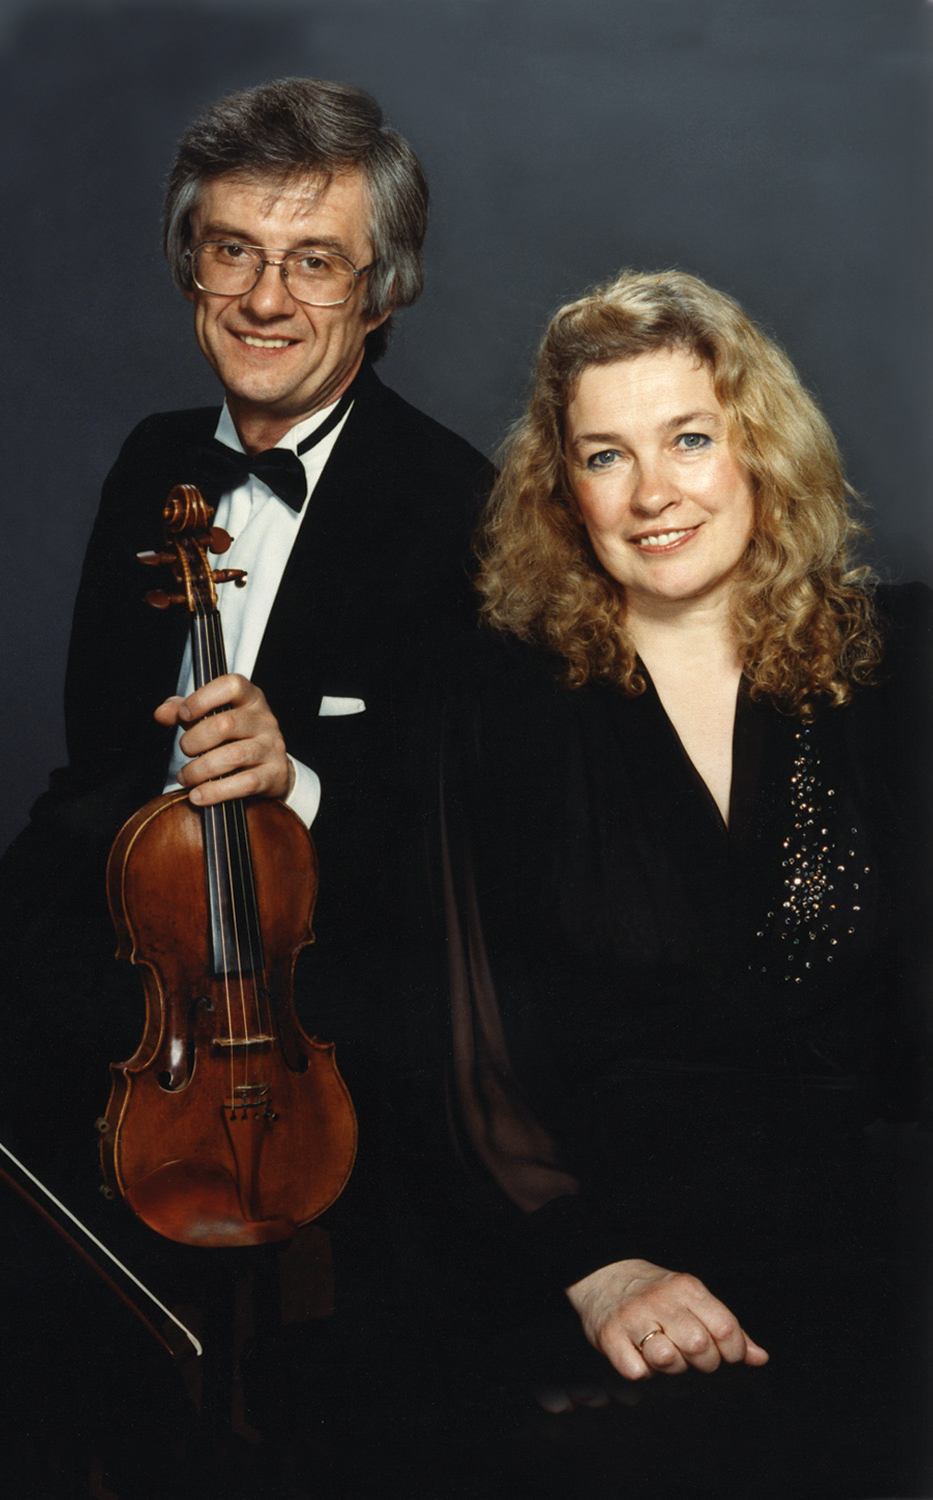 Oleh with his wife, Tatiana Tchekina